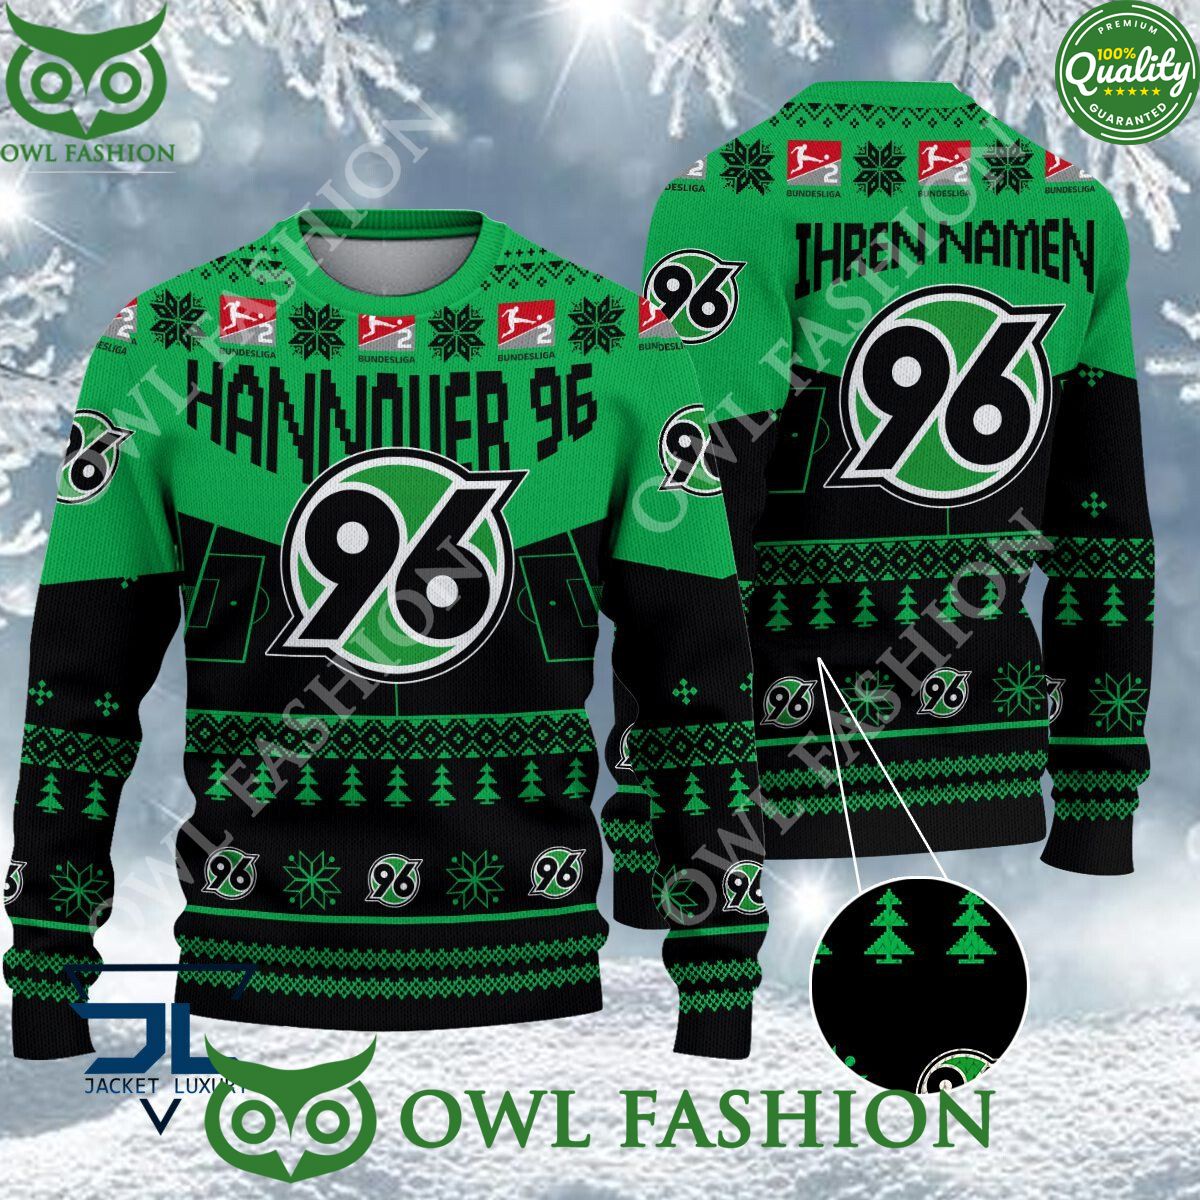 hannover 96 limited for bundesliga fans ugly sweater jumper 1 6SOzP.jpg